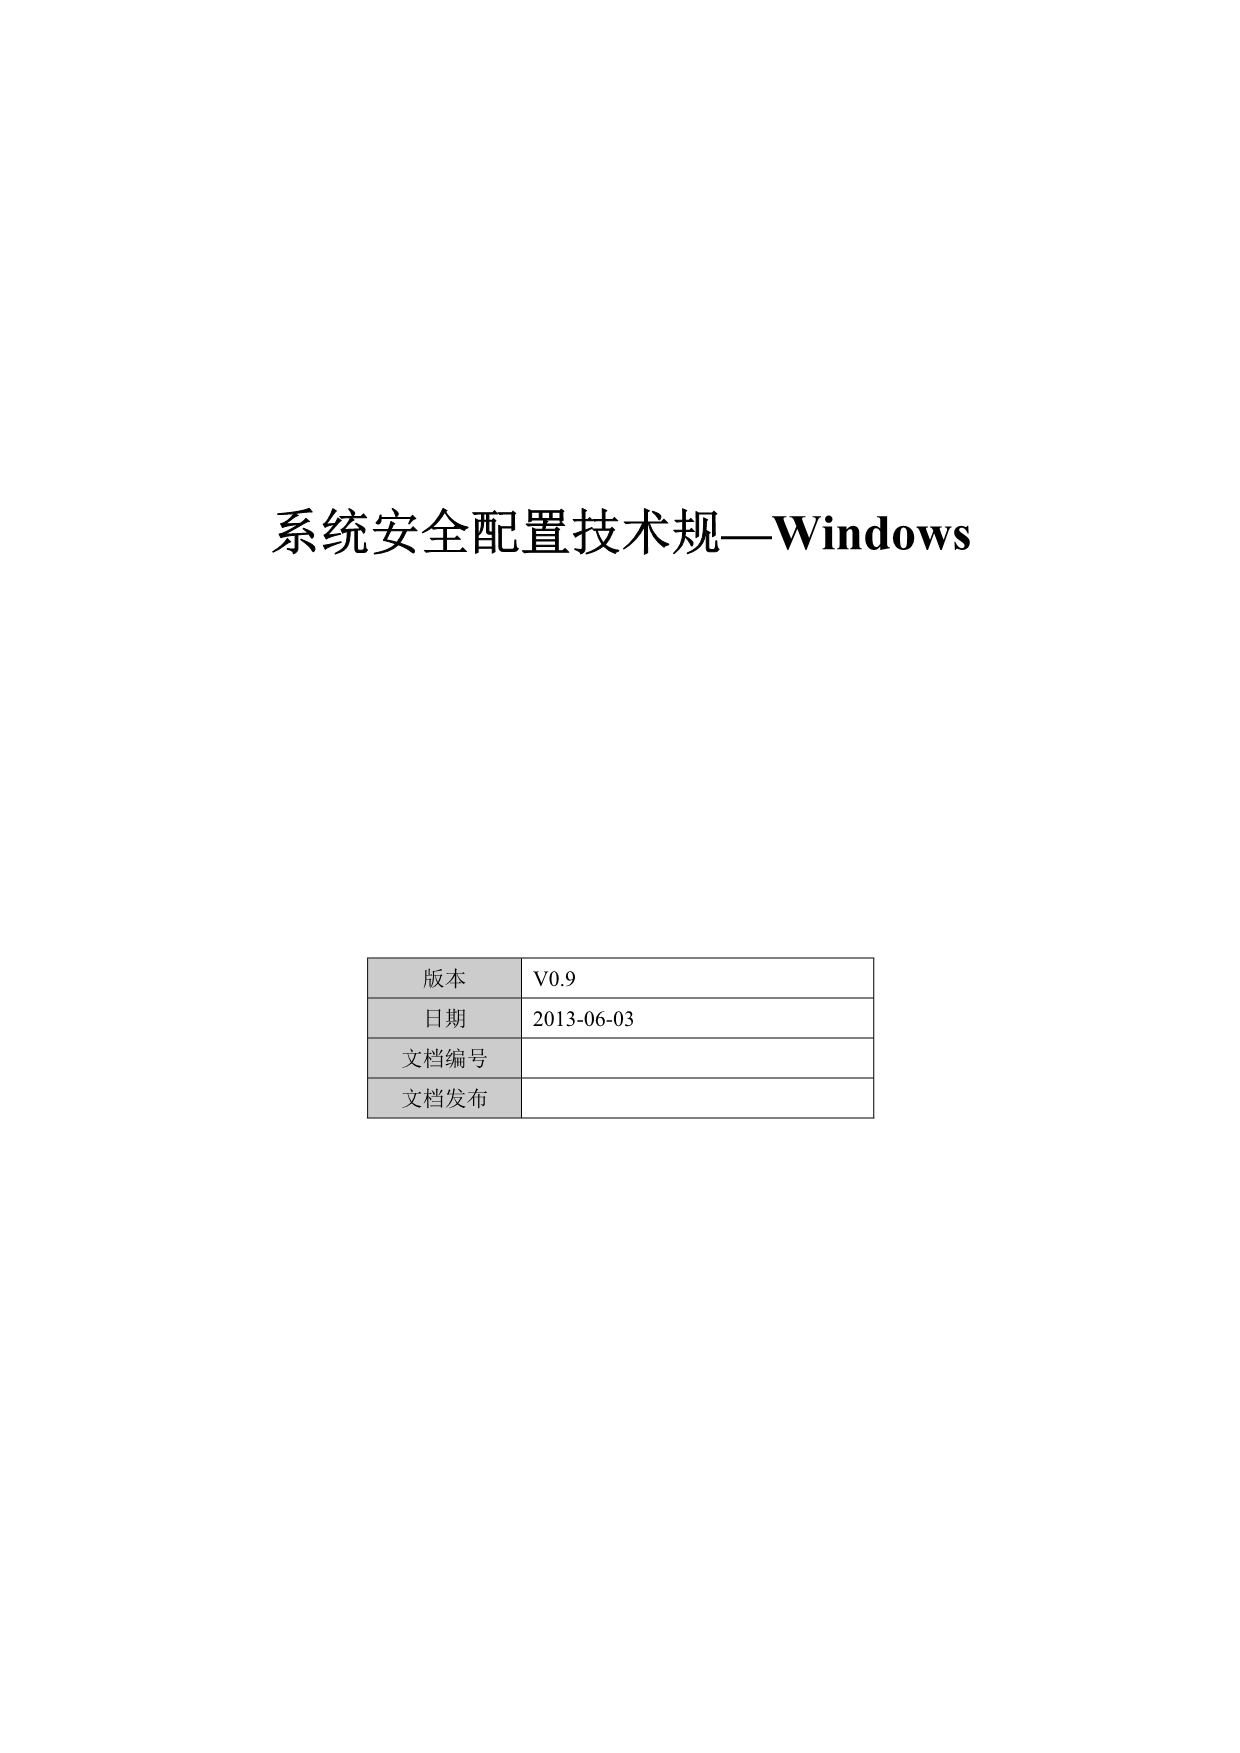 系统安全配置技术规范_Windows_第1页